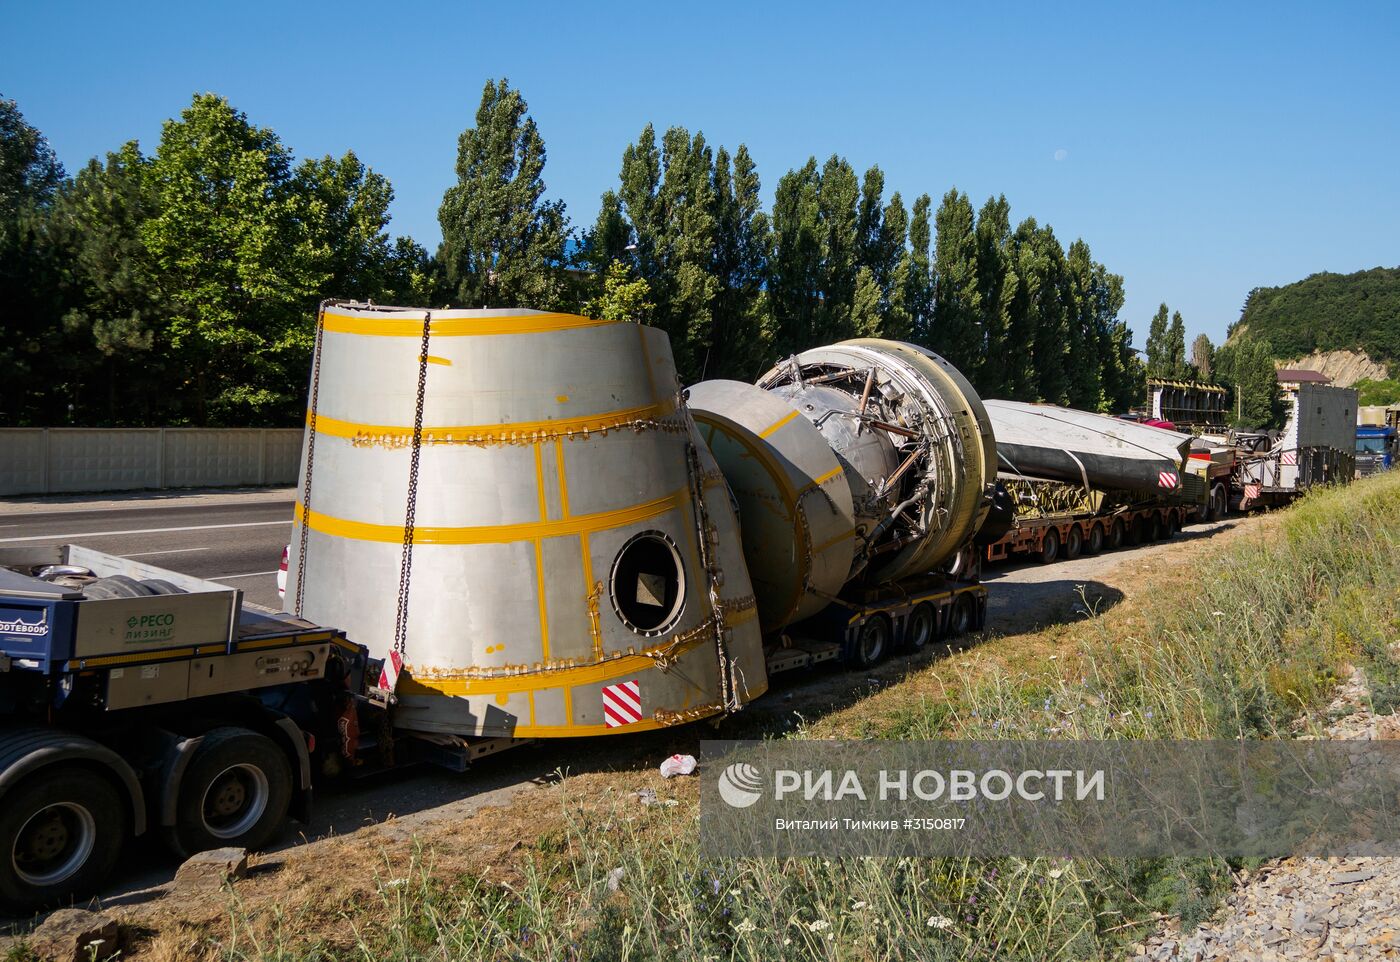 Макет космического корабля "Буран" прибыл в Краснодарский край